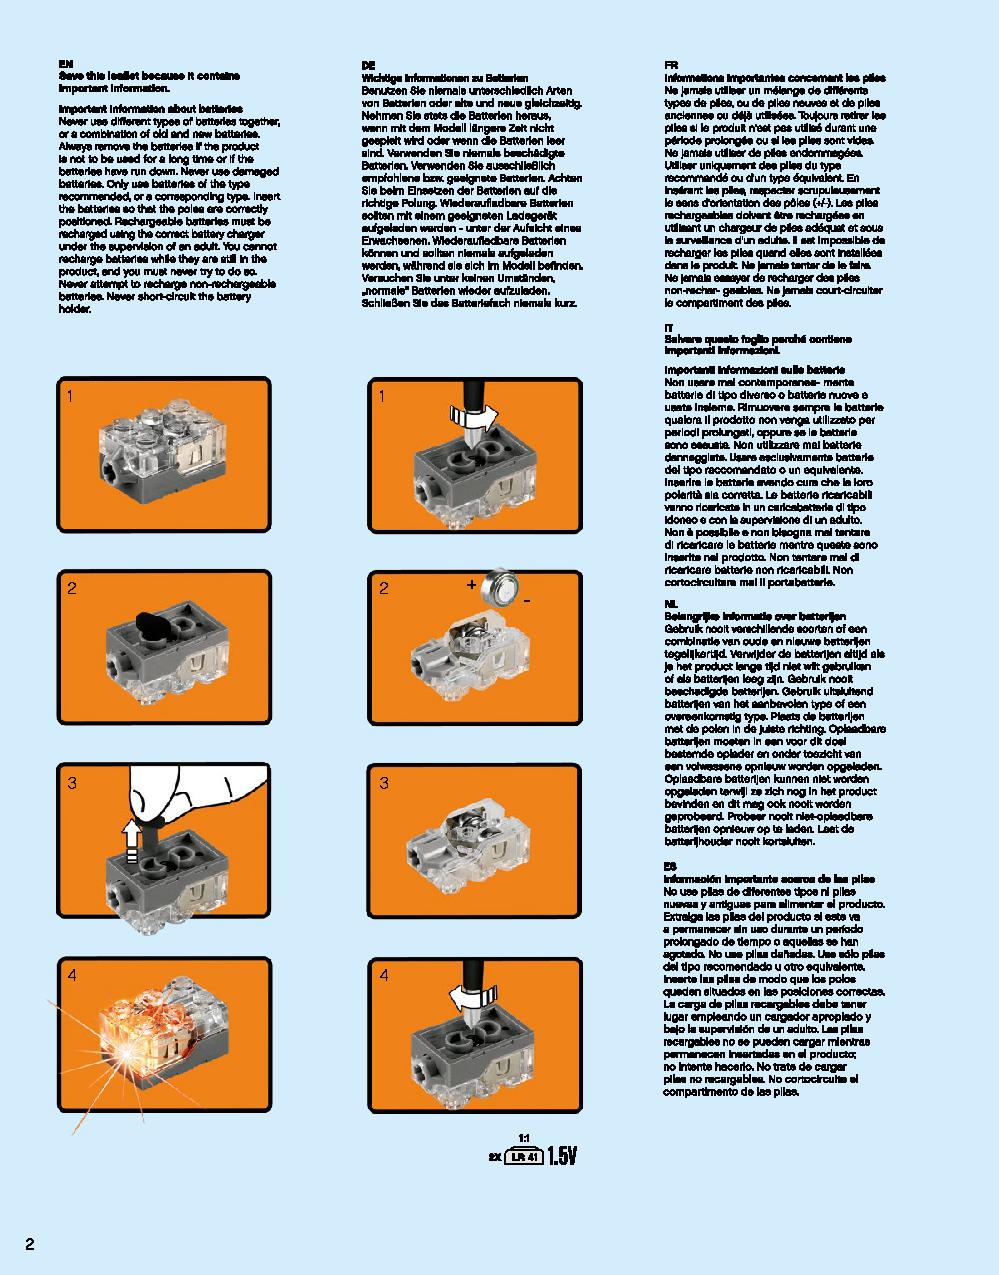 어벤져스 헐크버스터: 울트론 에디션 76105 레고 세트 제품정보 레고 조립설명서 2 page